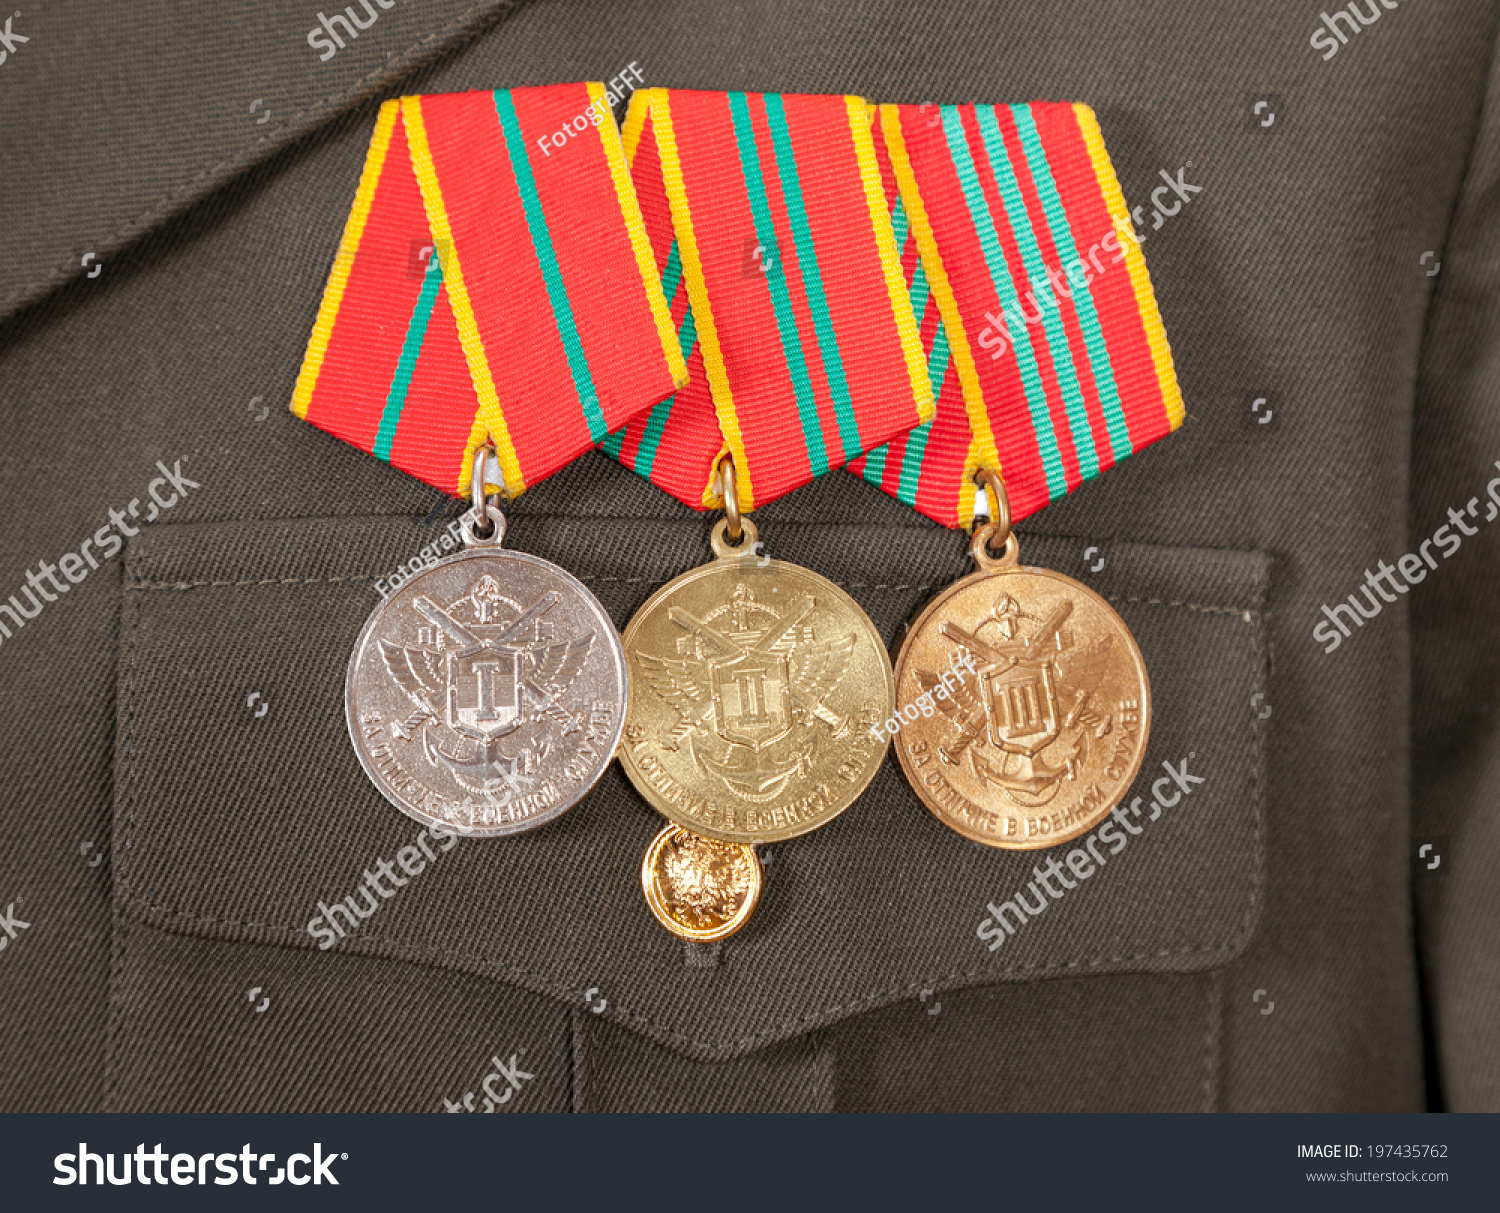 Как вешаются медали. Медали на форме. Медали военные. Медаль за выслугу лет. Размещение медалей за выслугу лет.